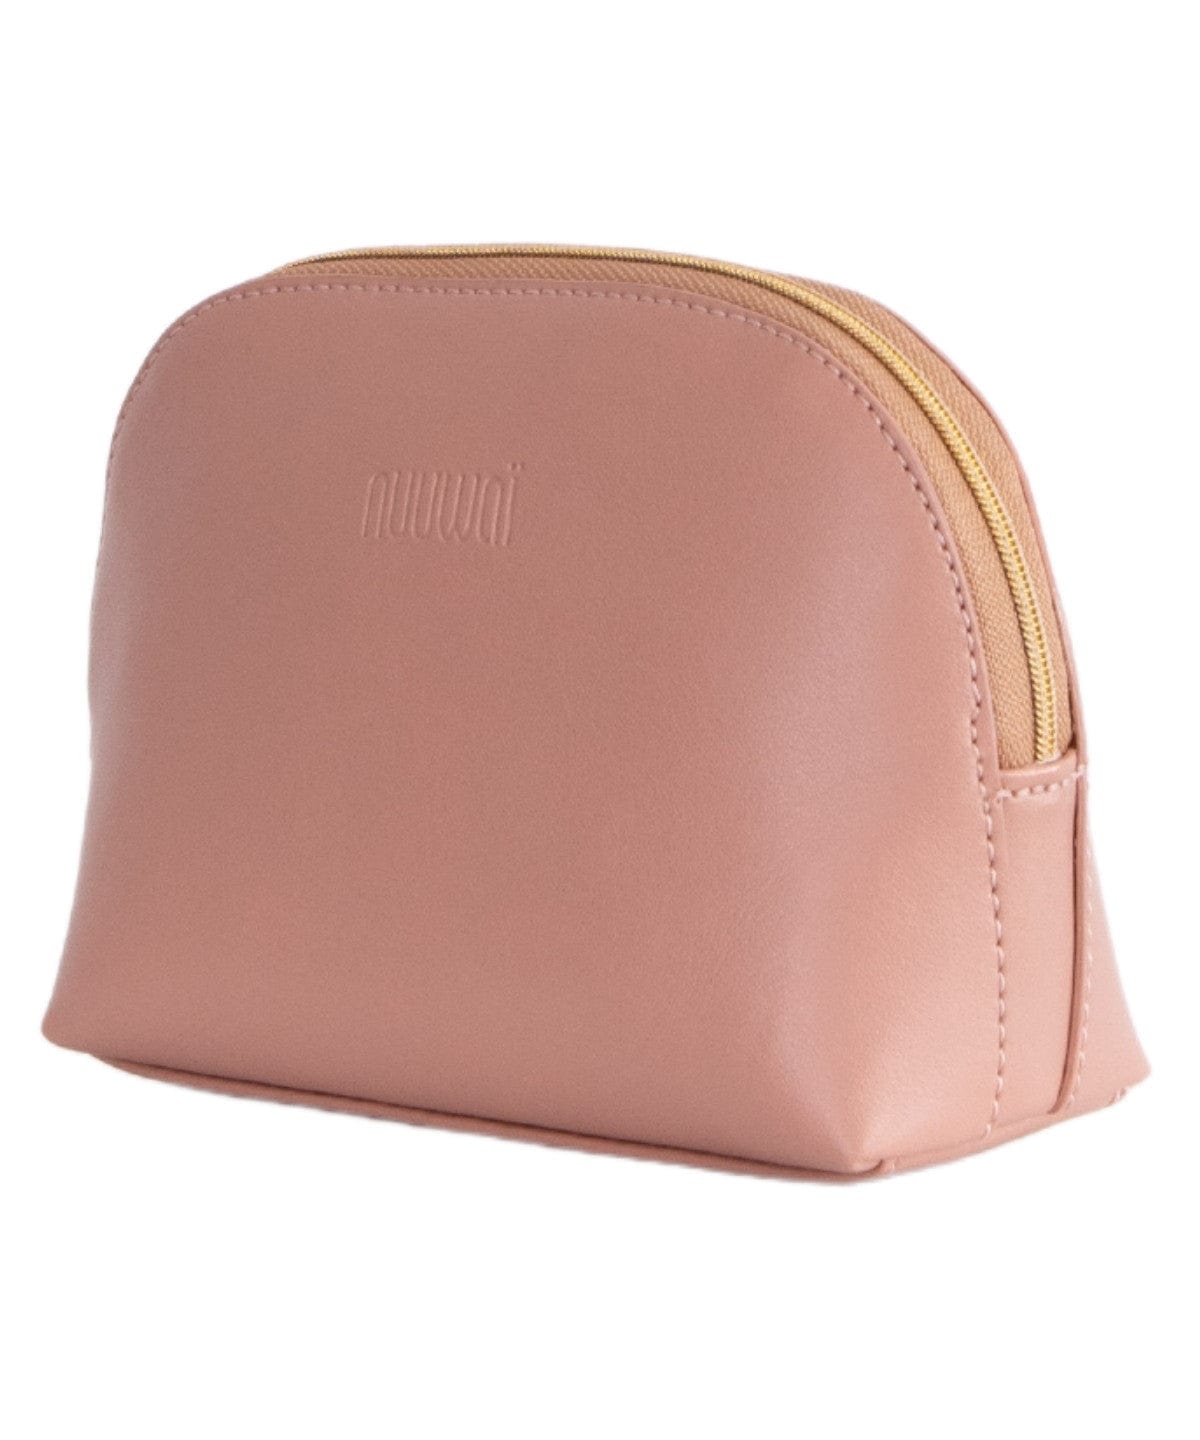 nuuwaï Handtaschen nuuwaï - Vegan Makeup Bag Small - LINDI S millennial pink bæredygtig mode etisk mode